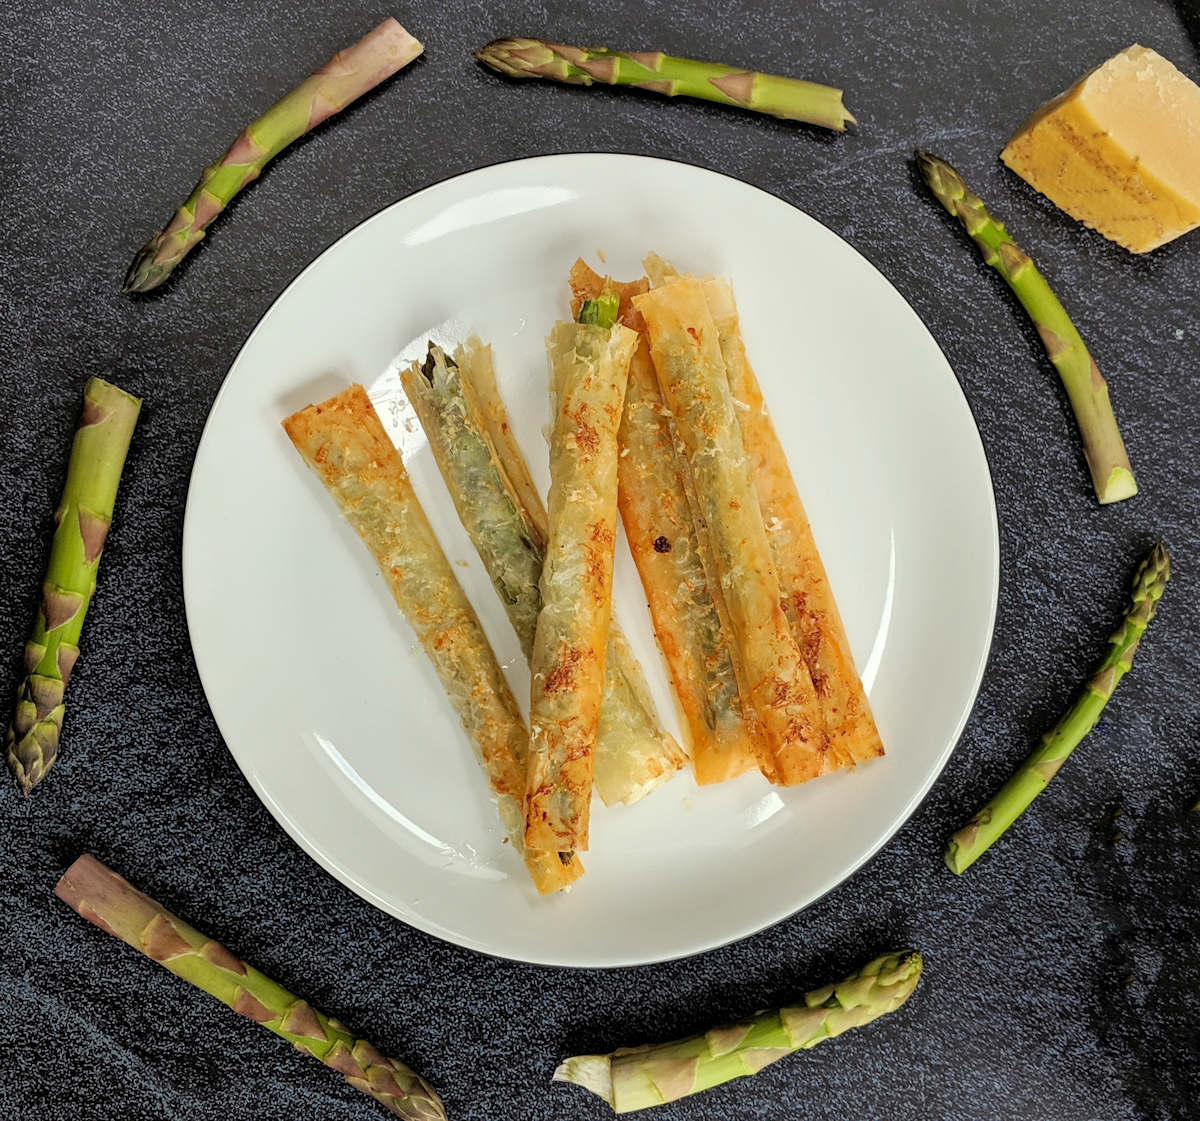 filo wrapped asparagus cuisinefiend.com